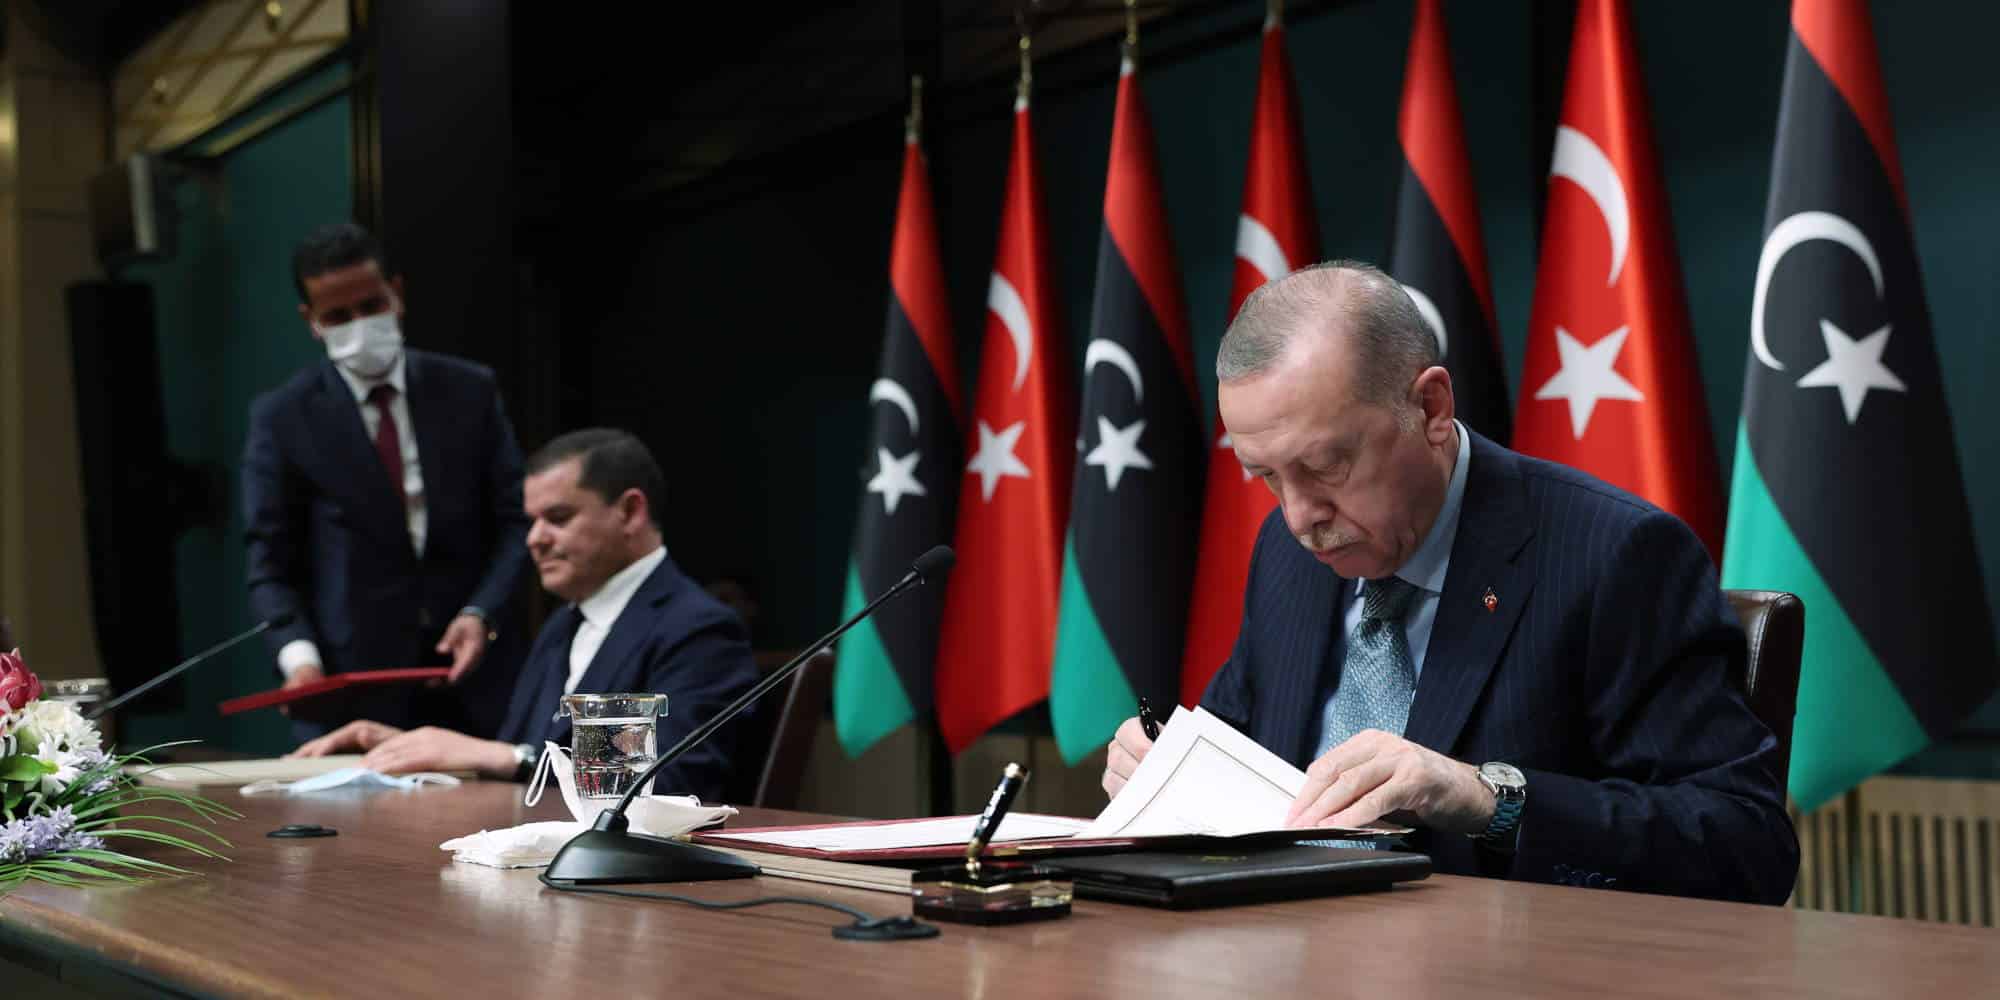 Ο Τούρκος πρόεδρος, Ρετζέπ Ταγίπ Ερντογάν με τον μεταβατικό πρωθυπουργό της Λιβύης, Αμπντούλ Χαμίντ Ντμπεϊμπά / Φωτογραφία: ΑΠΕ